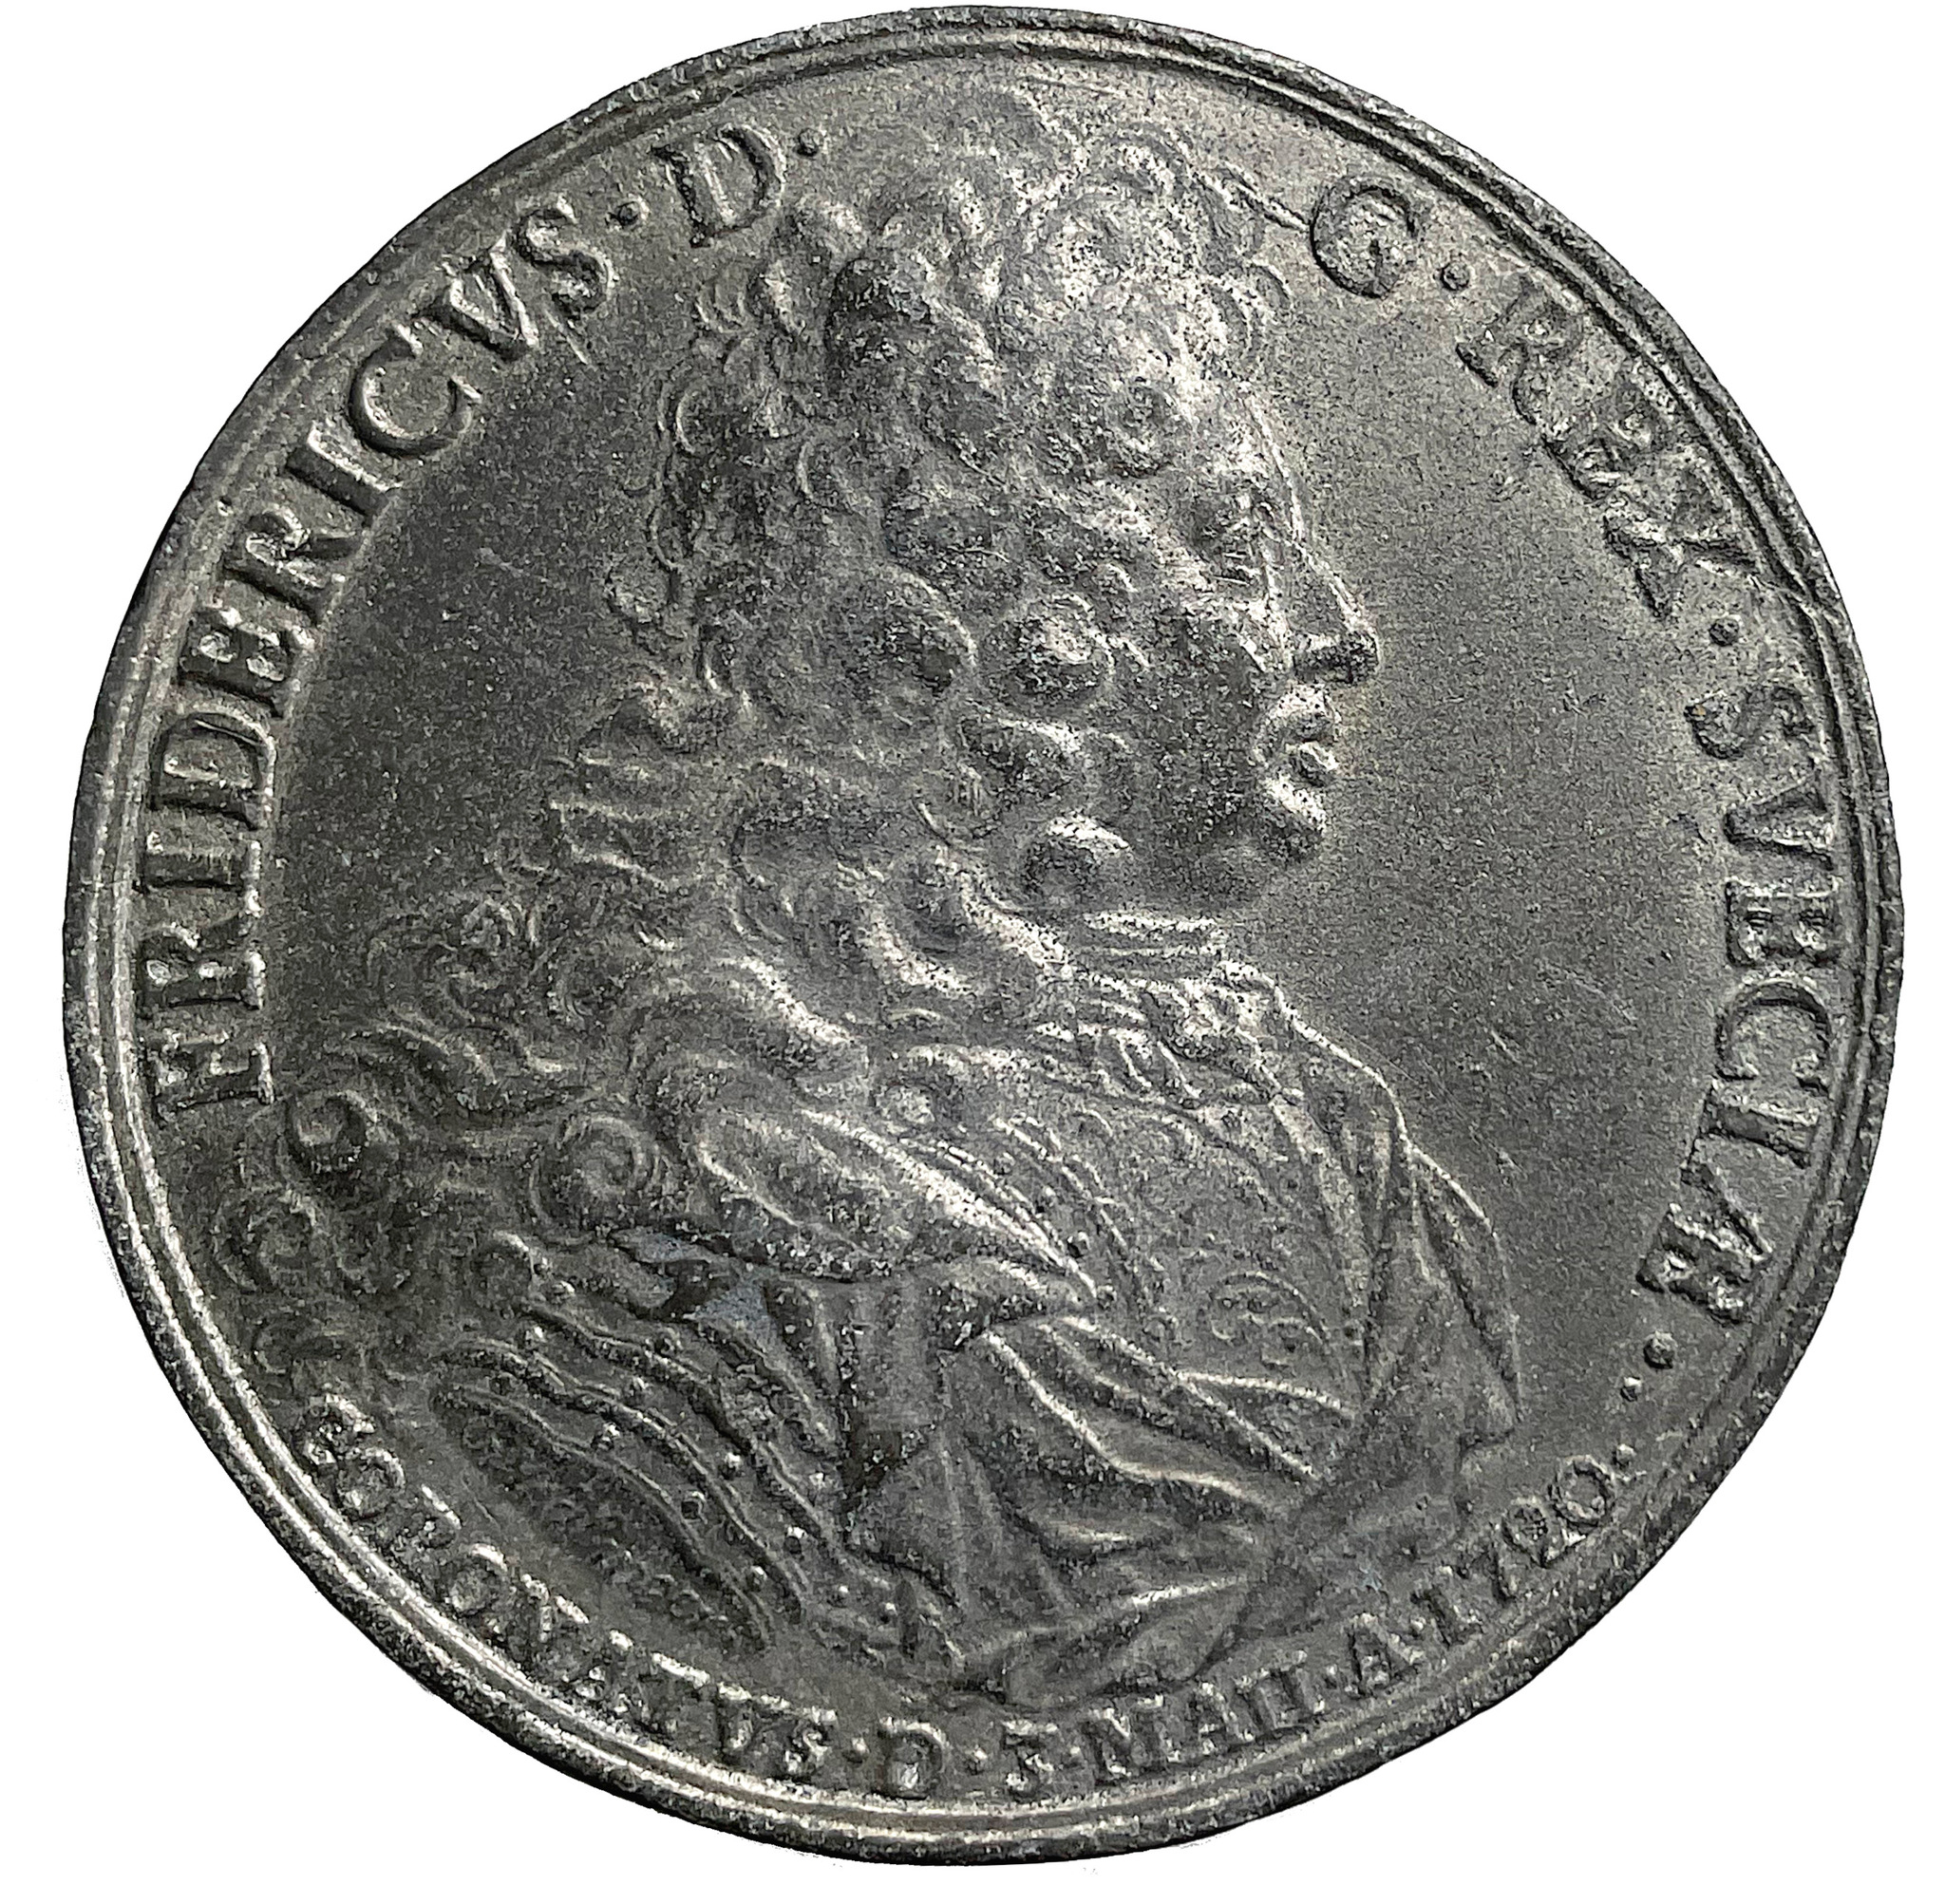 Fredrik I - Kröningen 1720 av Johann Carl Hedlinger i tenn - mycket sällsynt - Ex. Bonde